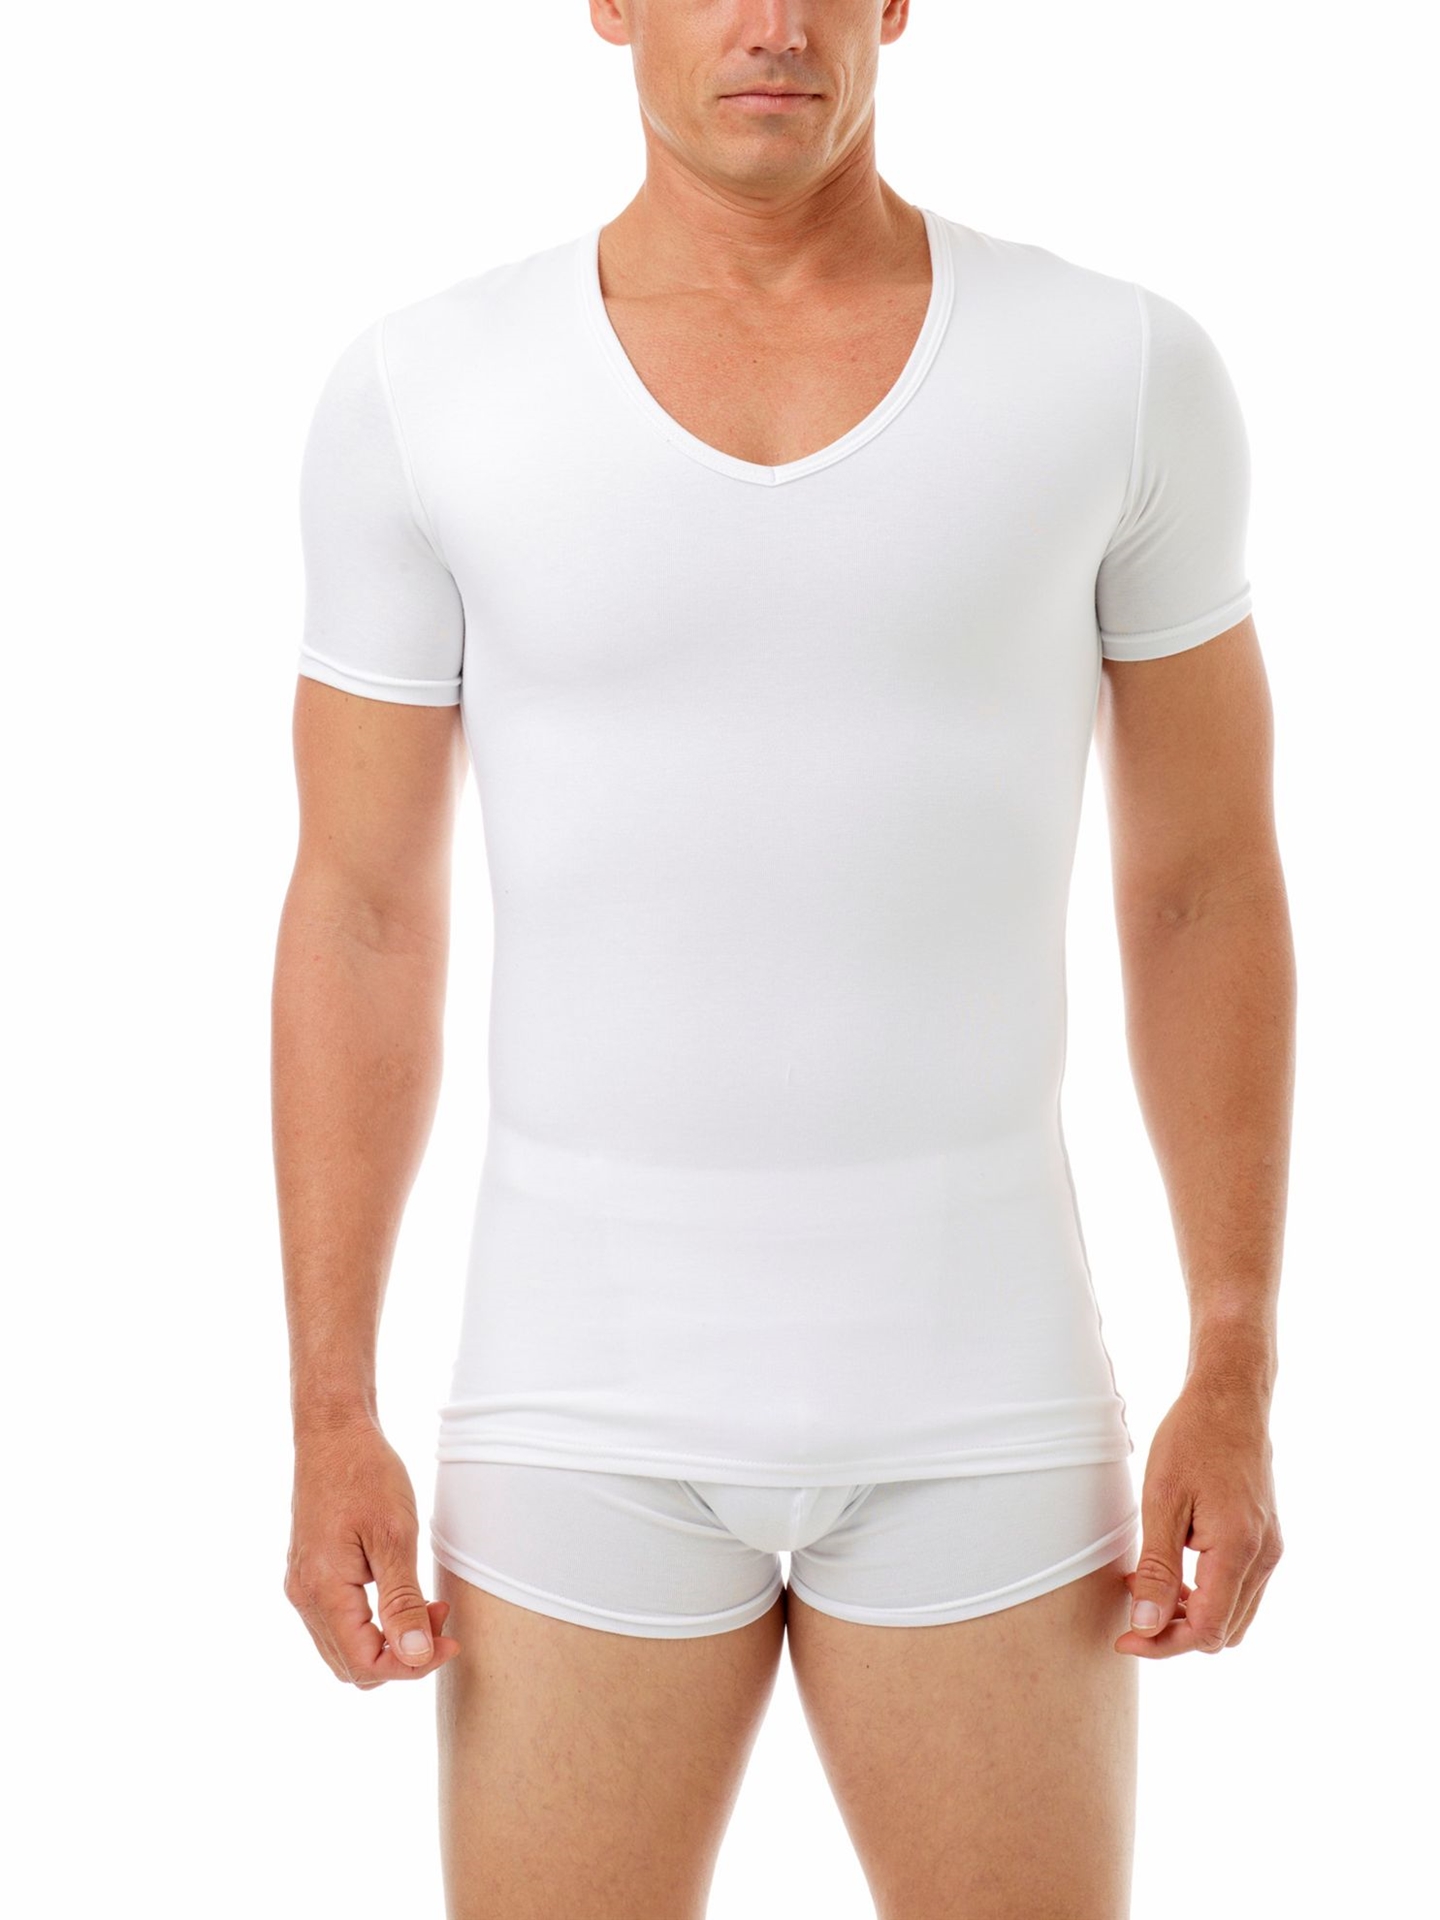 Cotton Compression V-neck T-shirt for Men | Shop Now at Underworks ...